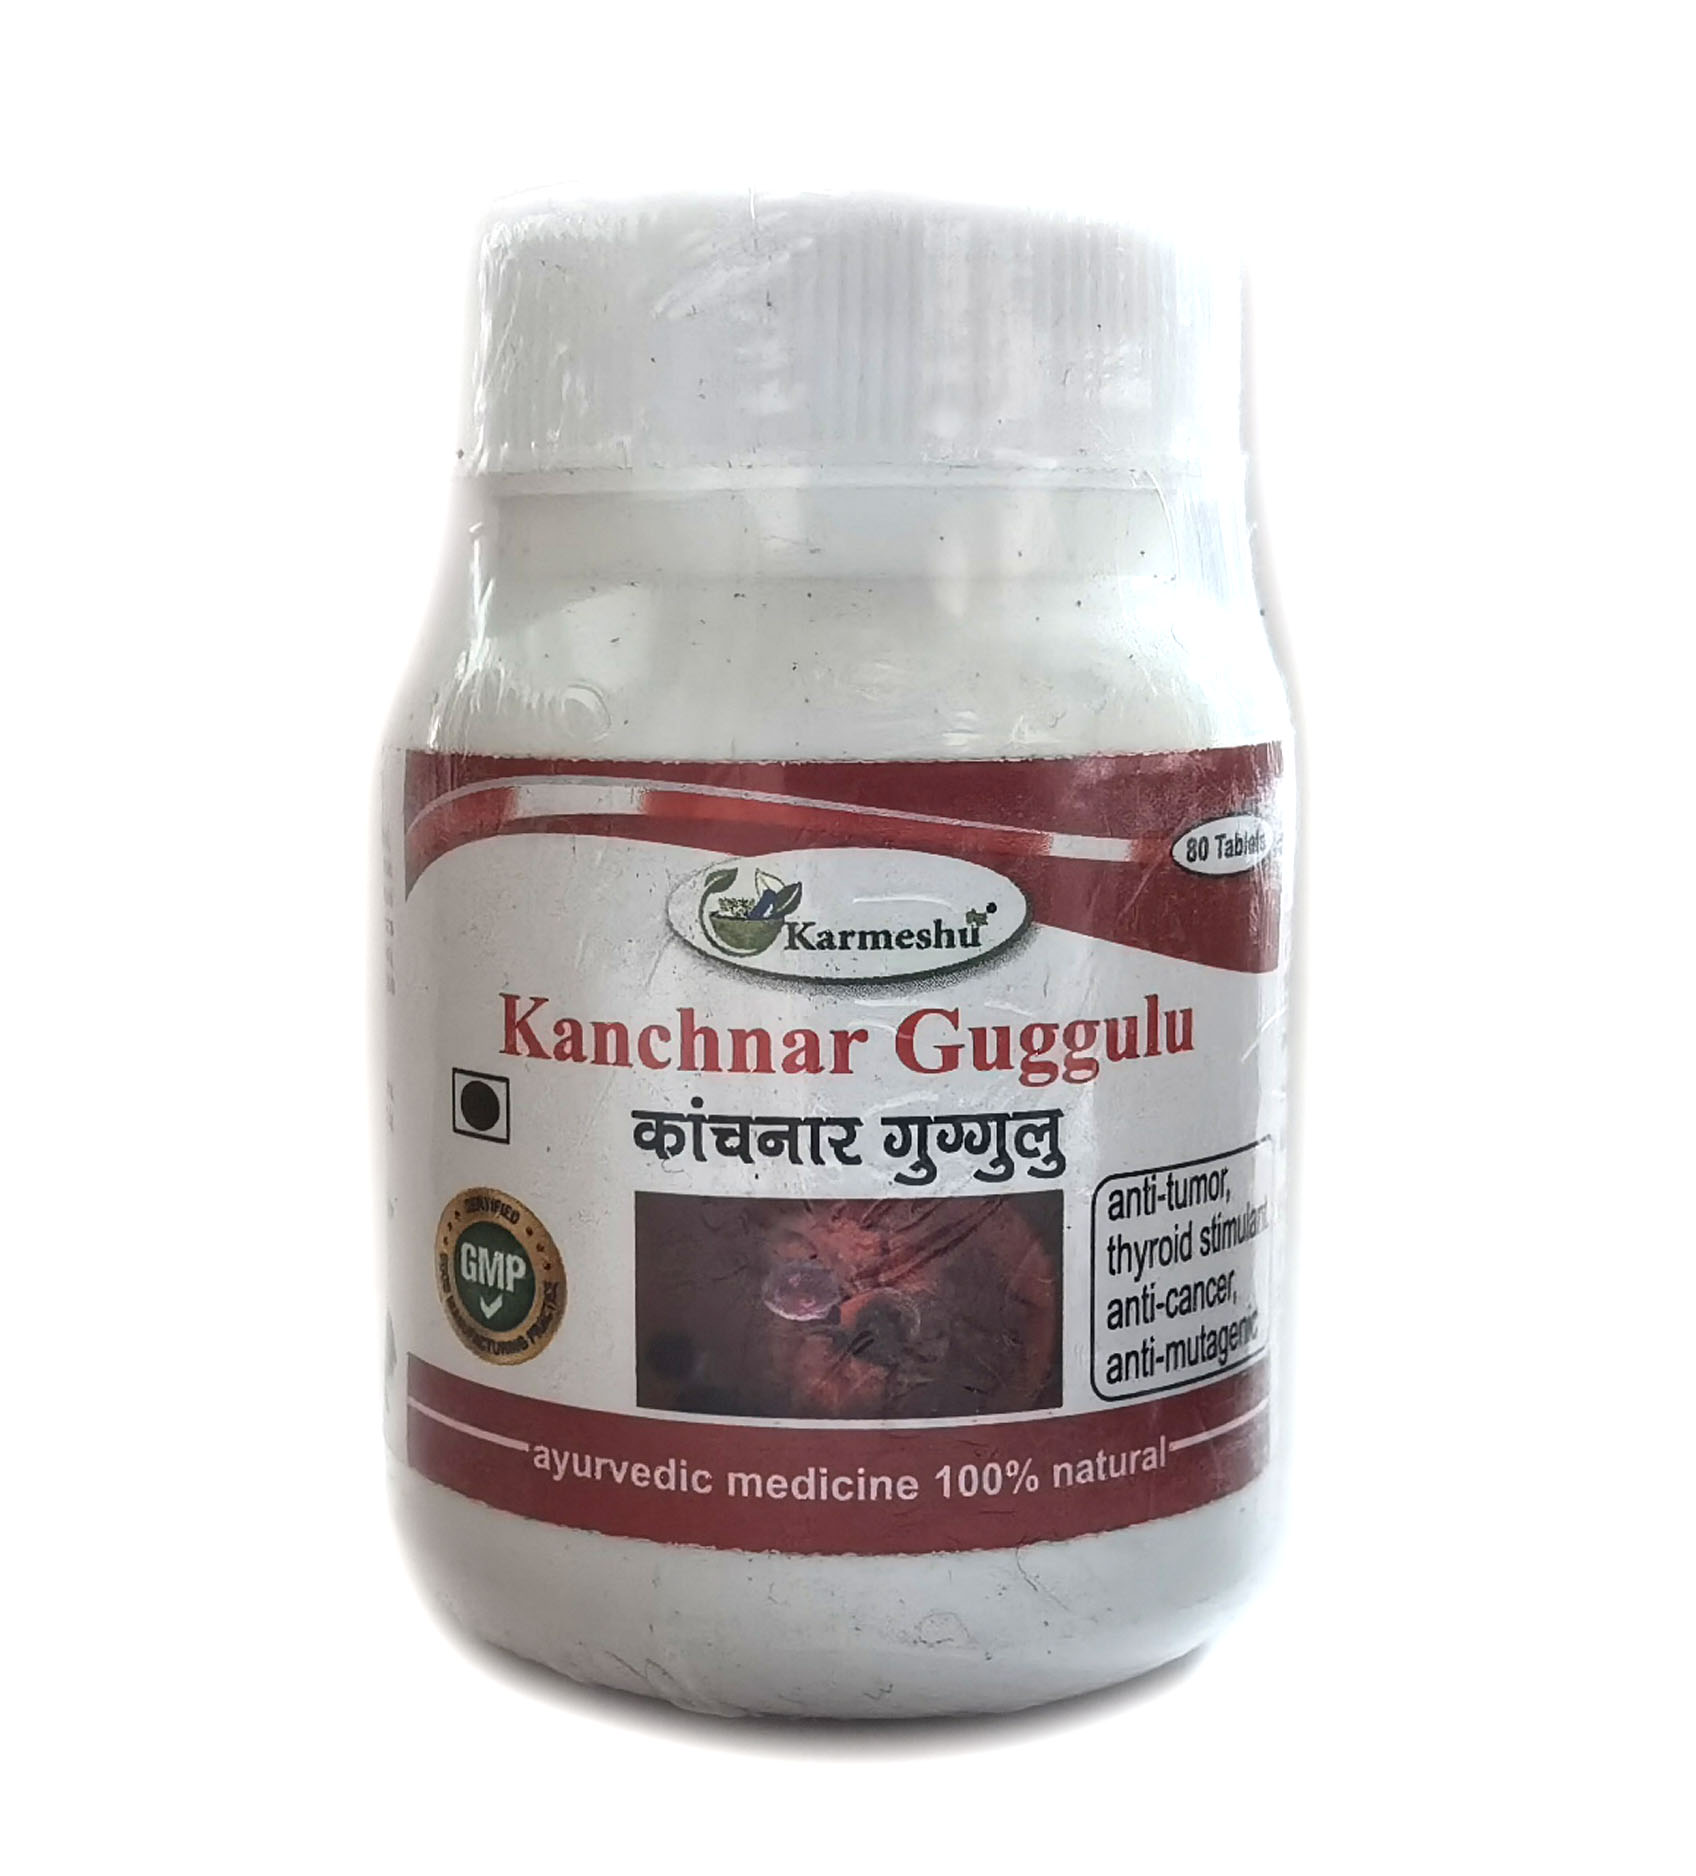 KANCHNAR GUGGULU, Karmeshu (КАНЧНАР ГУГГУЛ, Кармешу), 80 таб. по 250 мг.